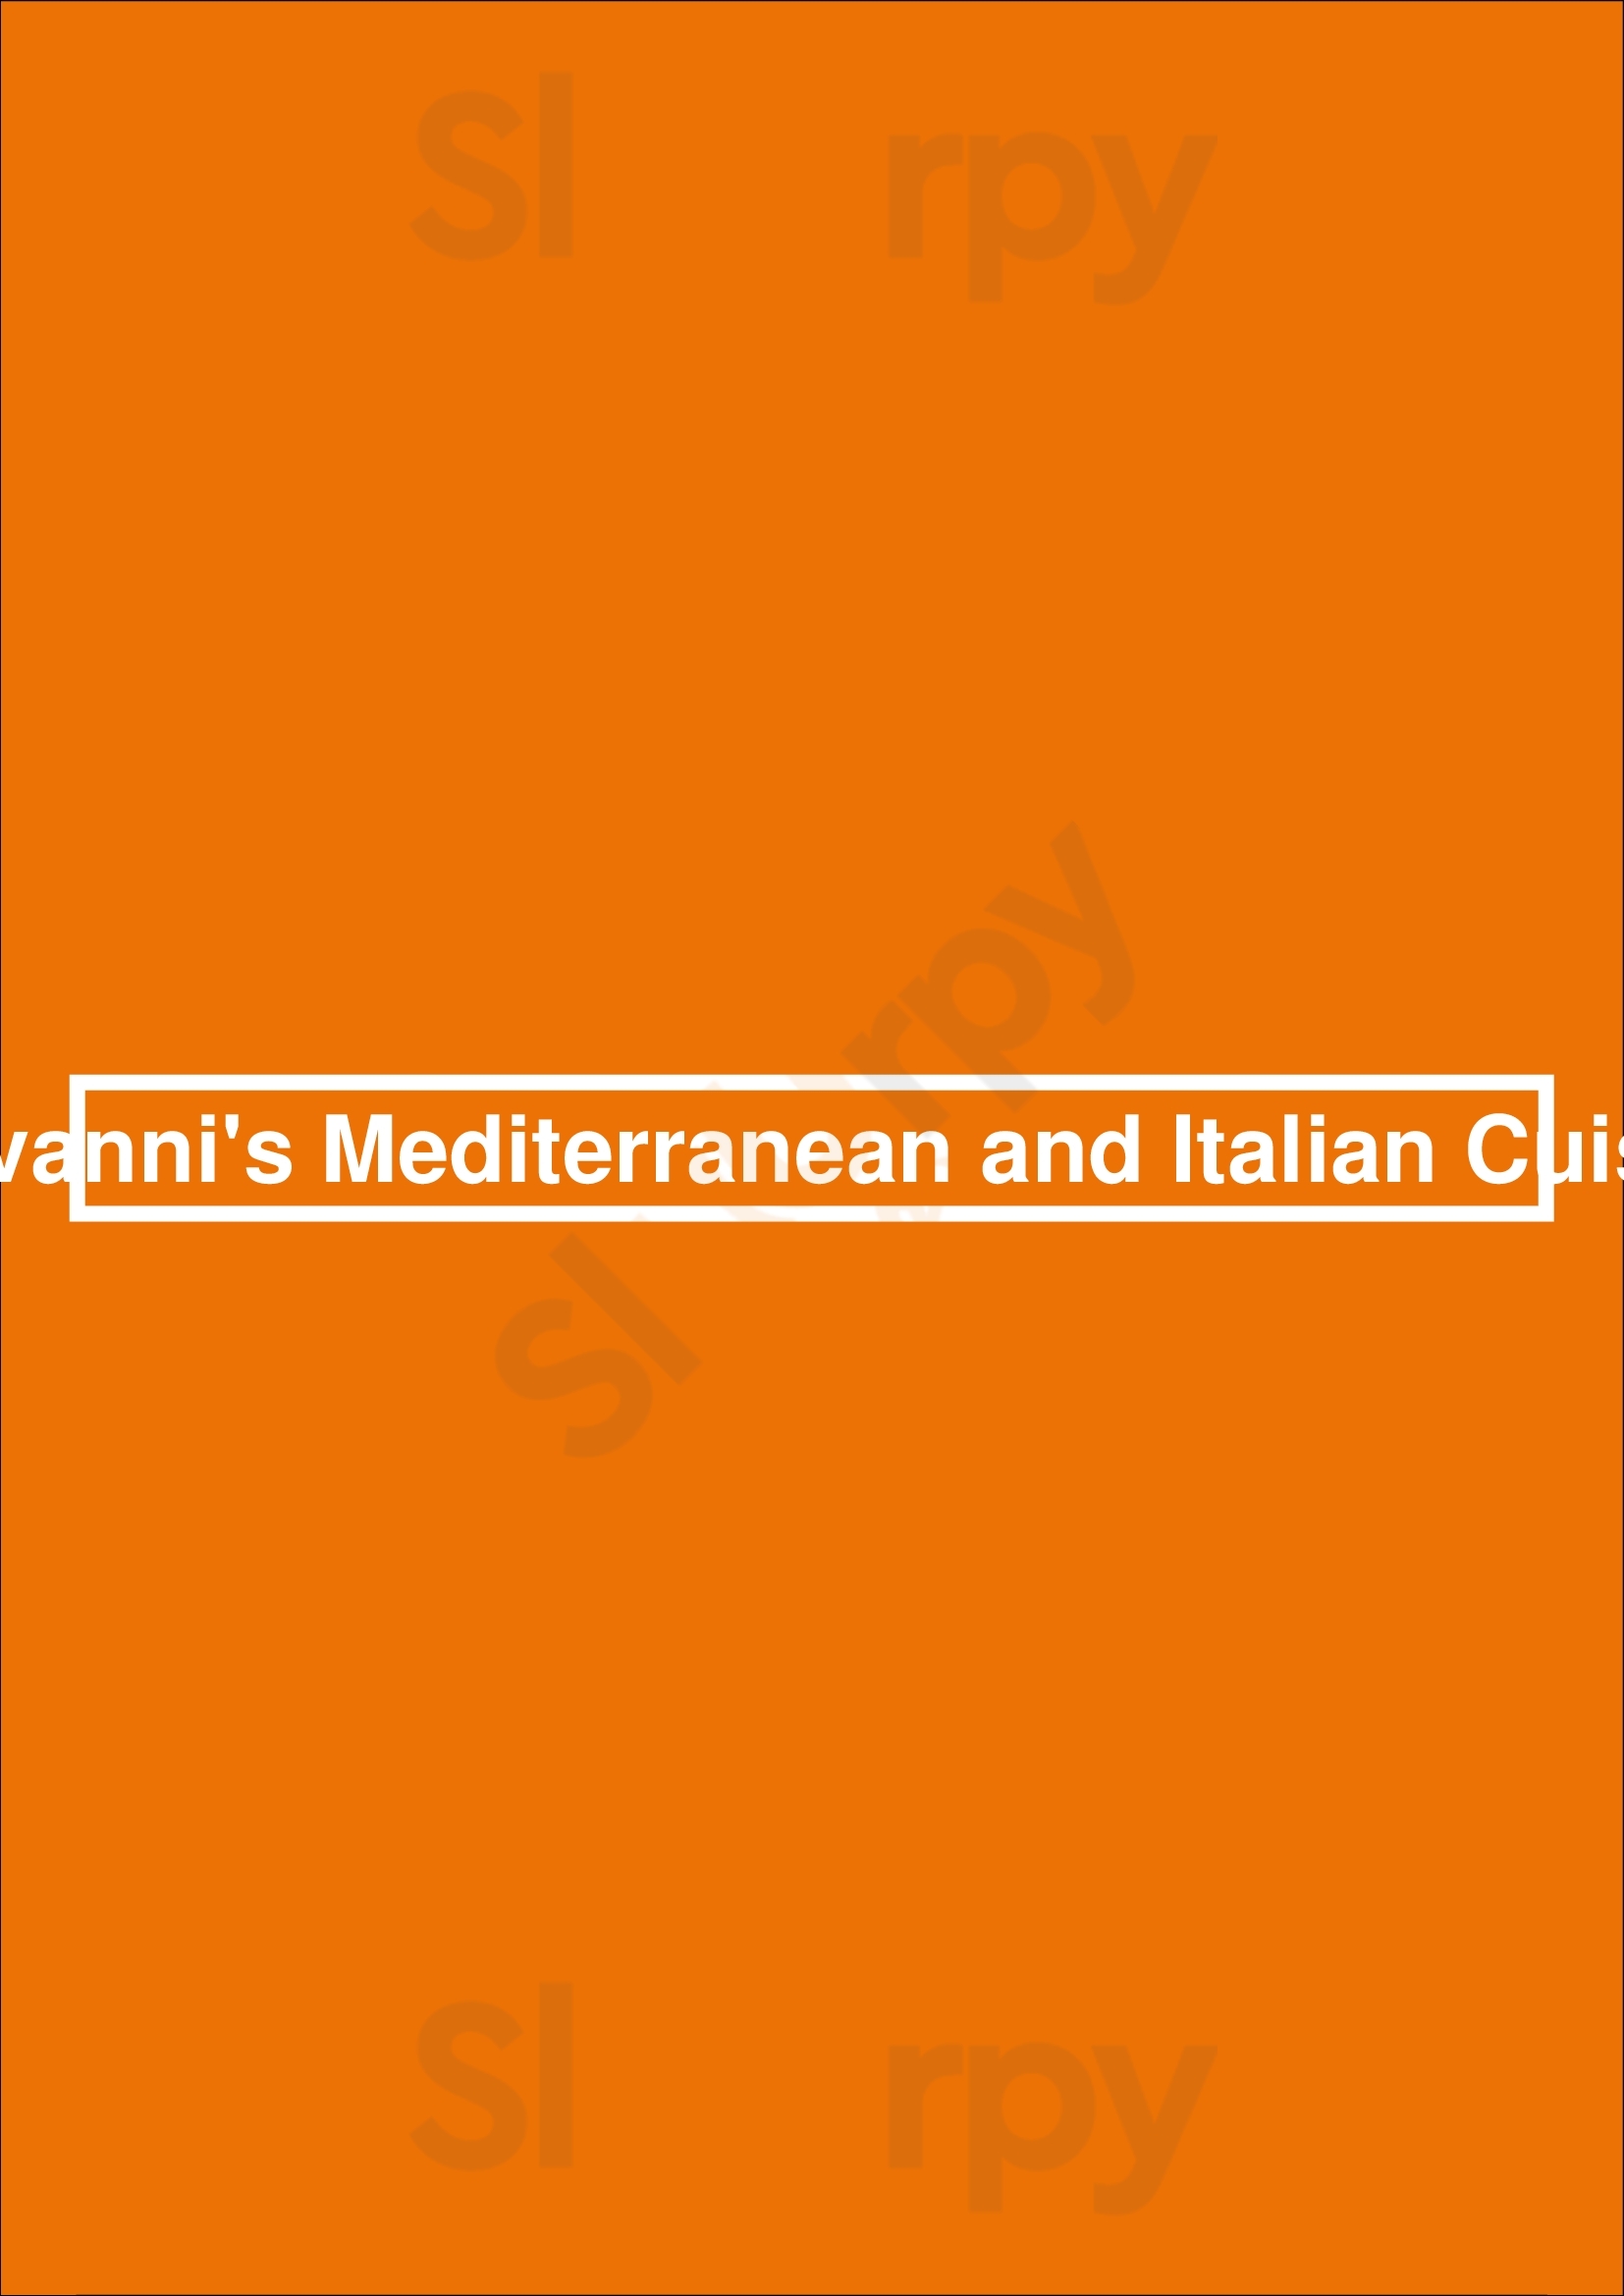 Giovanni's Mediterranean & Italian Cuisine Dallas Menu - 1